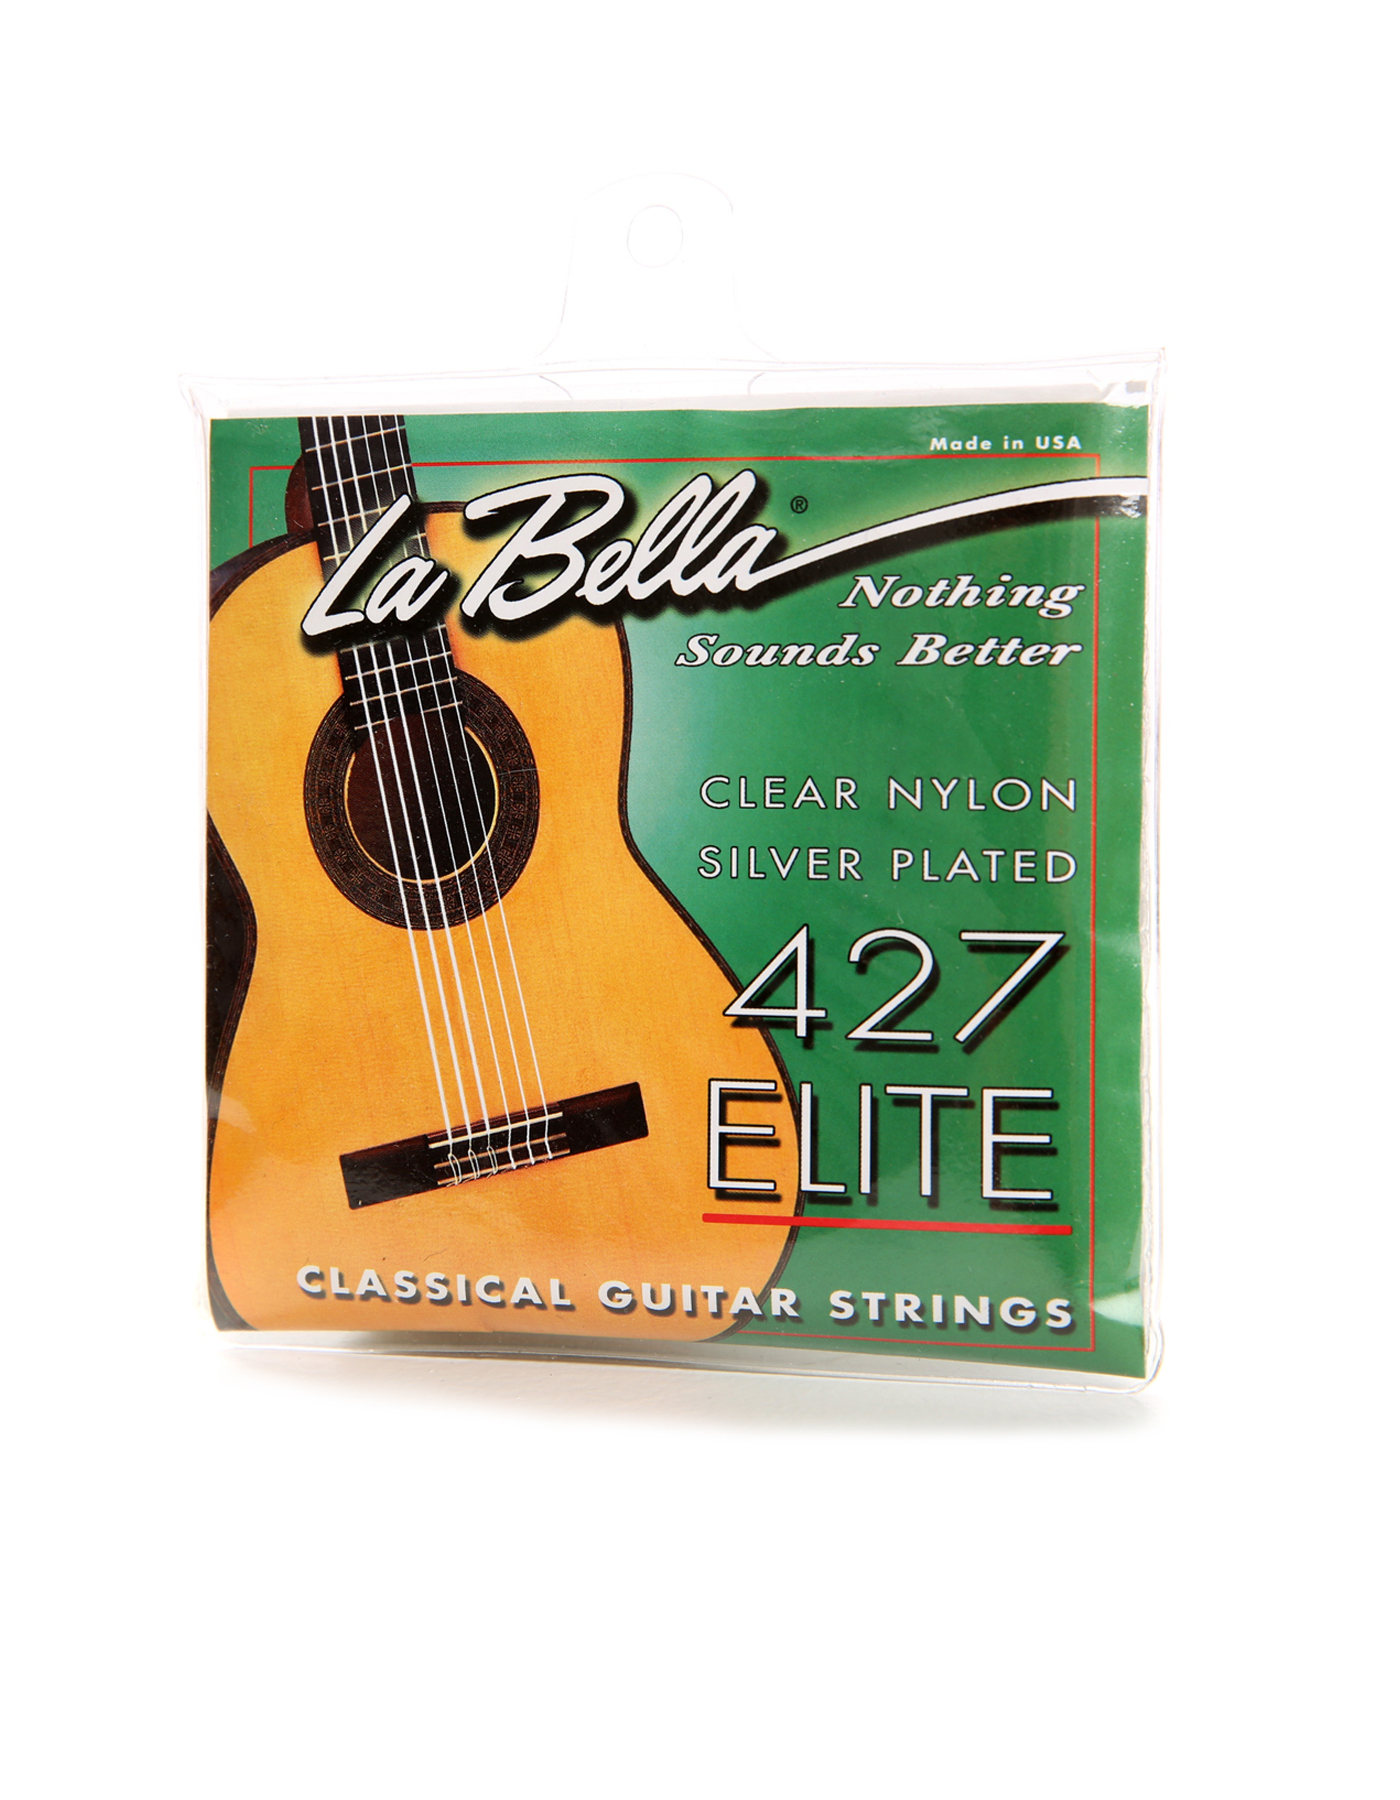 Gitaarsnaren La Bella 427 Elite medium spanning